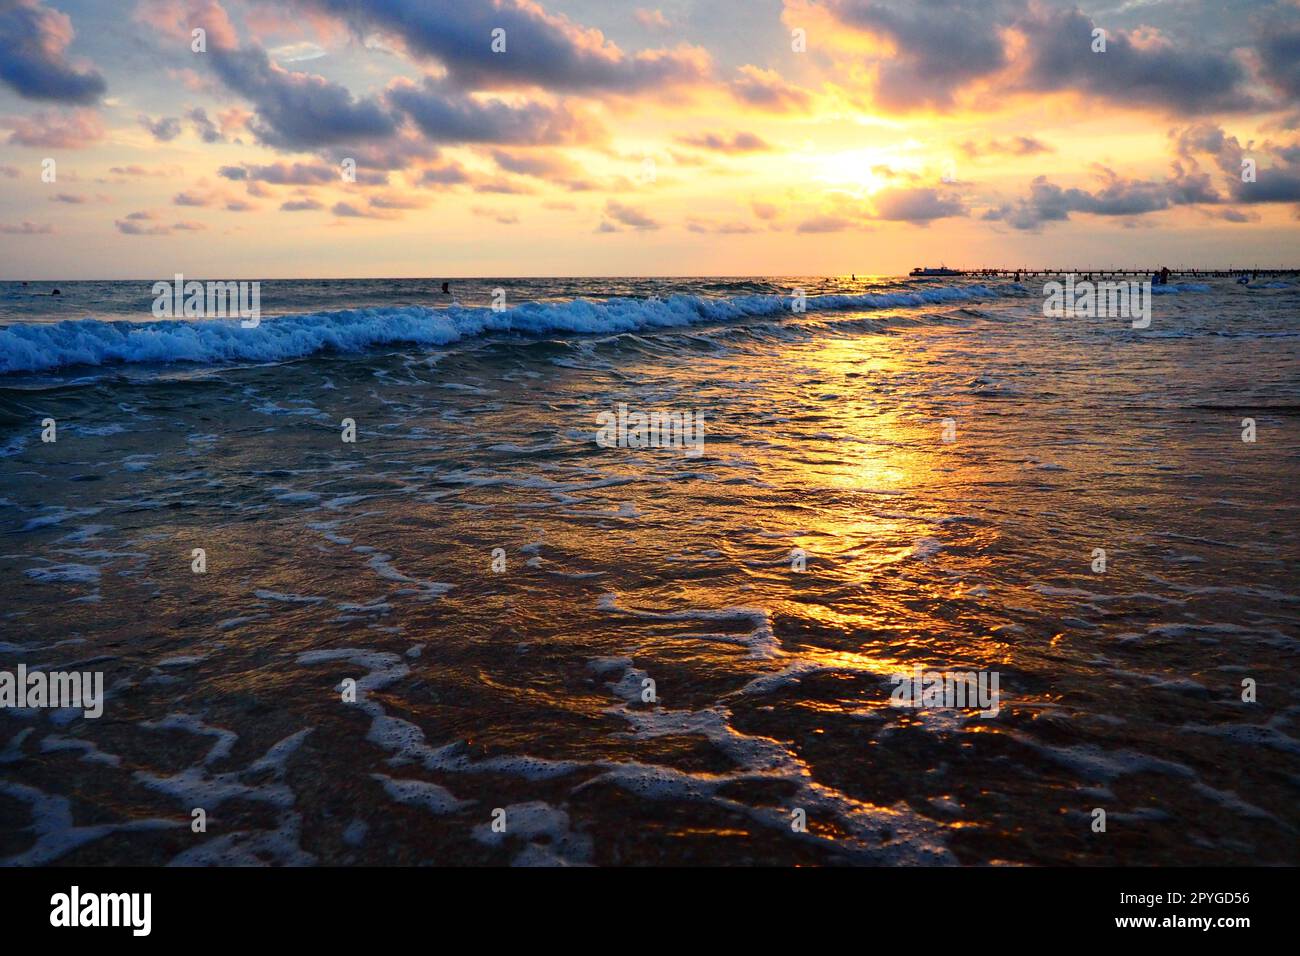 Onde e tramonti sul mare. Bel tramonto. Le onde schiumose si infrangono sulla spiaggia sabbiosa. Vityazevo, Anapa, Mar Nero. Mecca turistica, centro benessere. Cielo serale. I raggi si riflettono sull'acqua Foto Stock